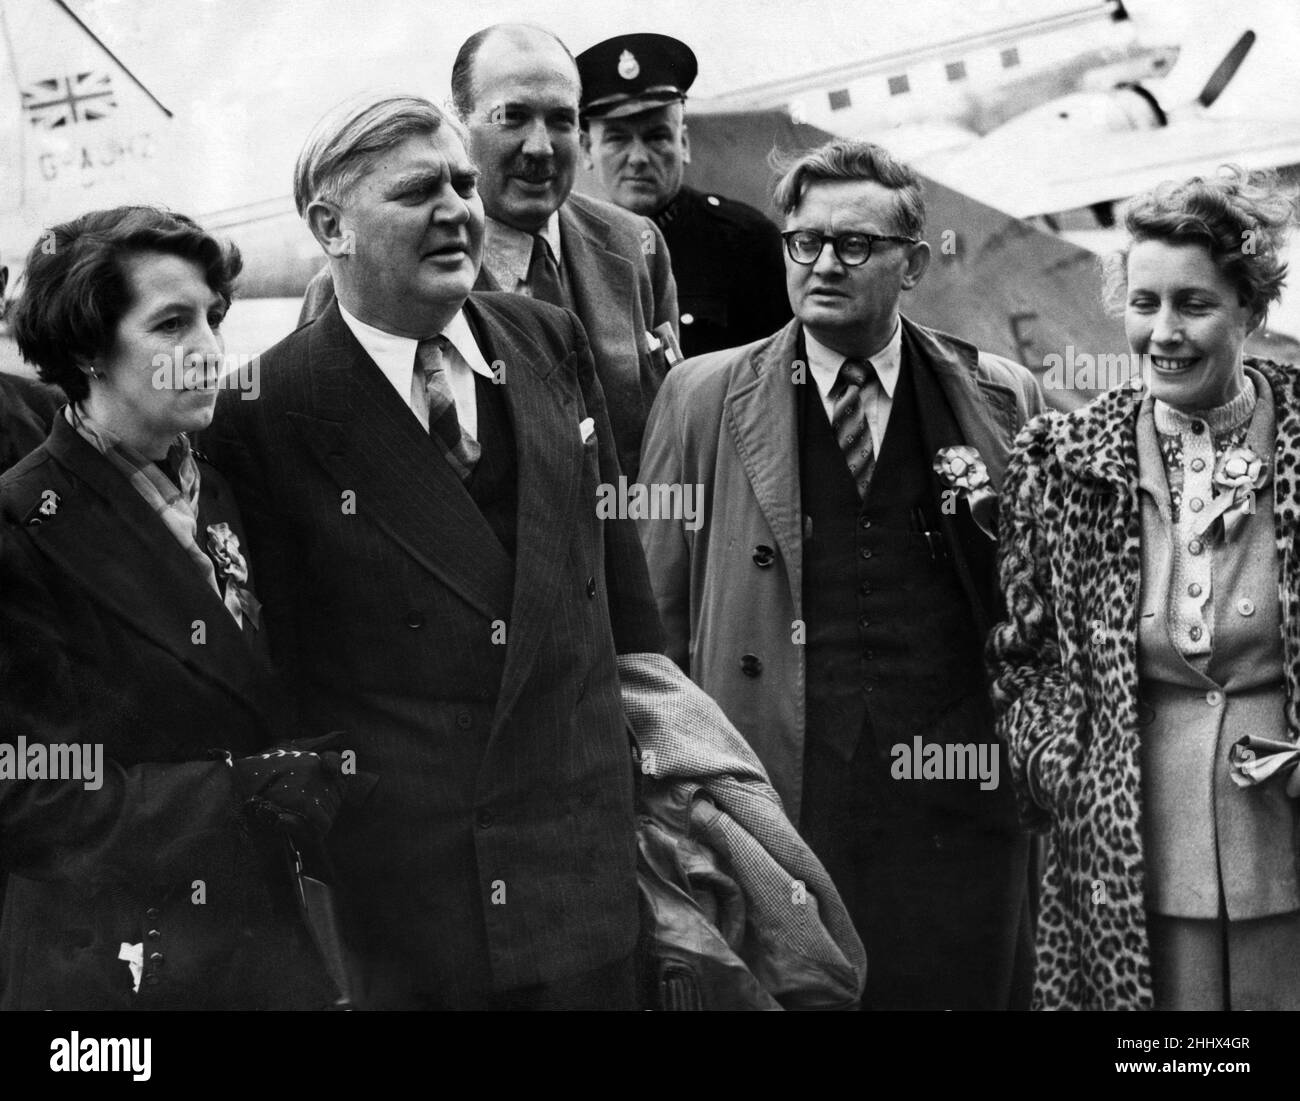 Aneuvin Bevan à l'aéroport de Renfrew, il effectue une visite de quatre jours à l'ouest de l'Écosse au cours de laquelle il s'exprimera en faveur des trois candidats travaillistes.Vers 1955. Banque D'Images